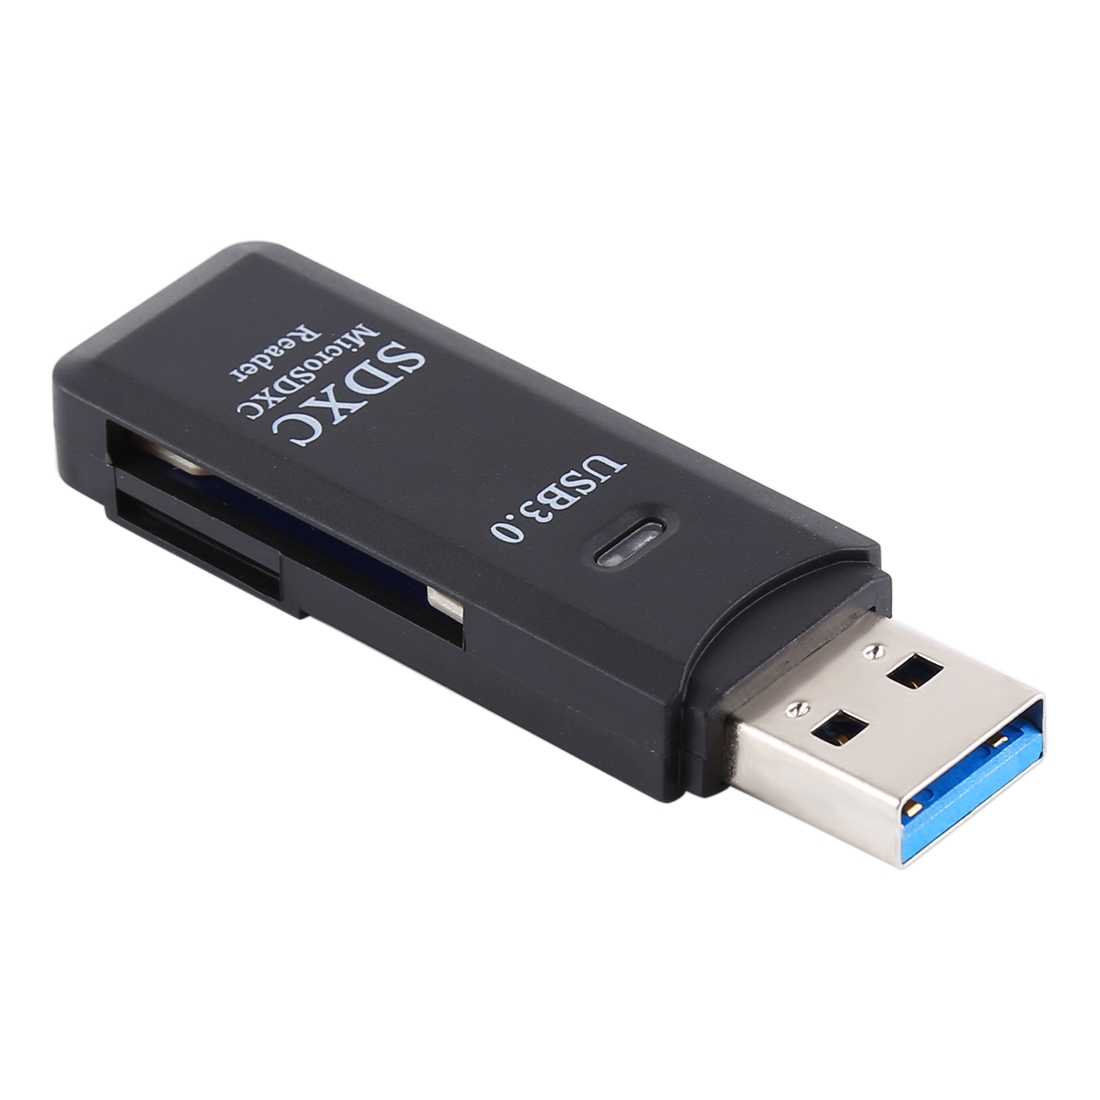 Se USB SD Kortlæser - Sort hos Music2you